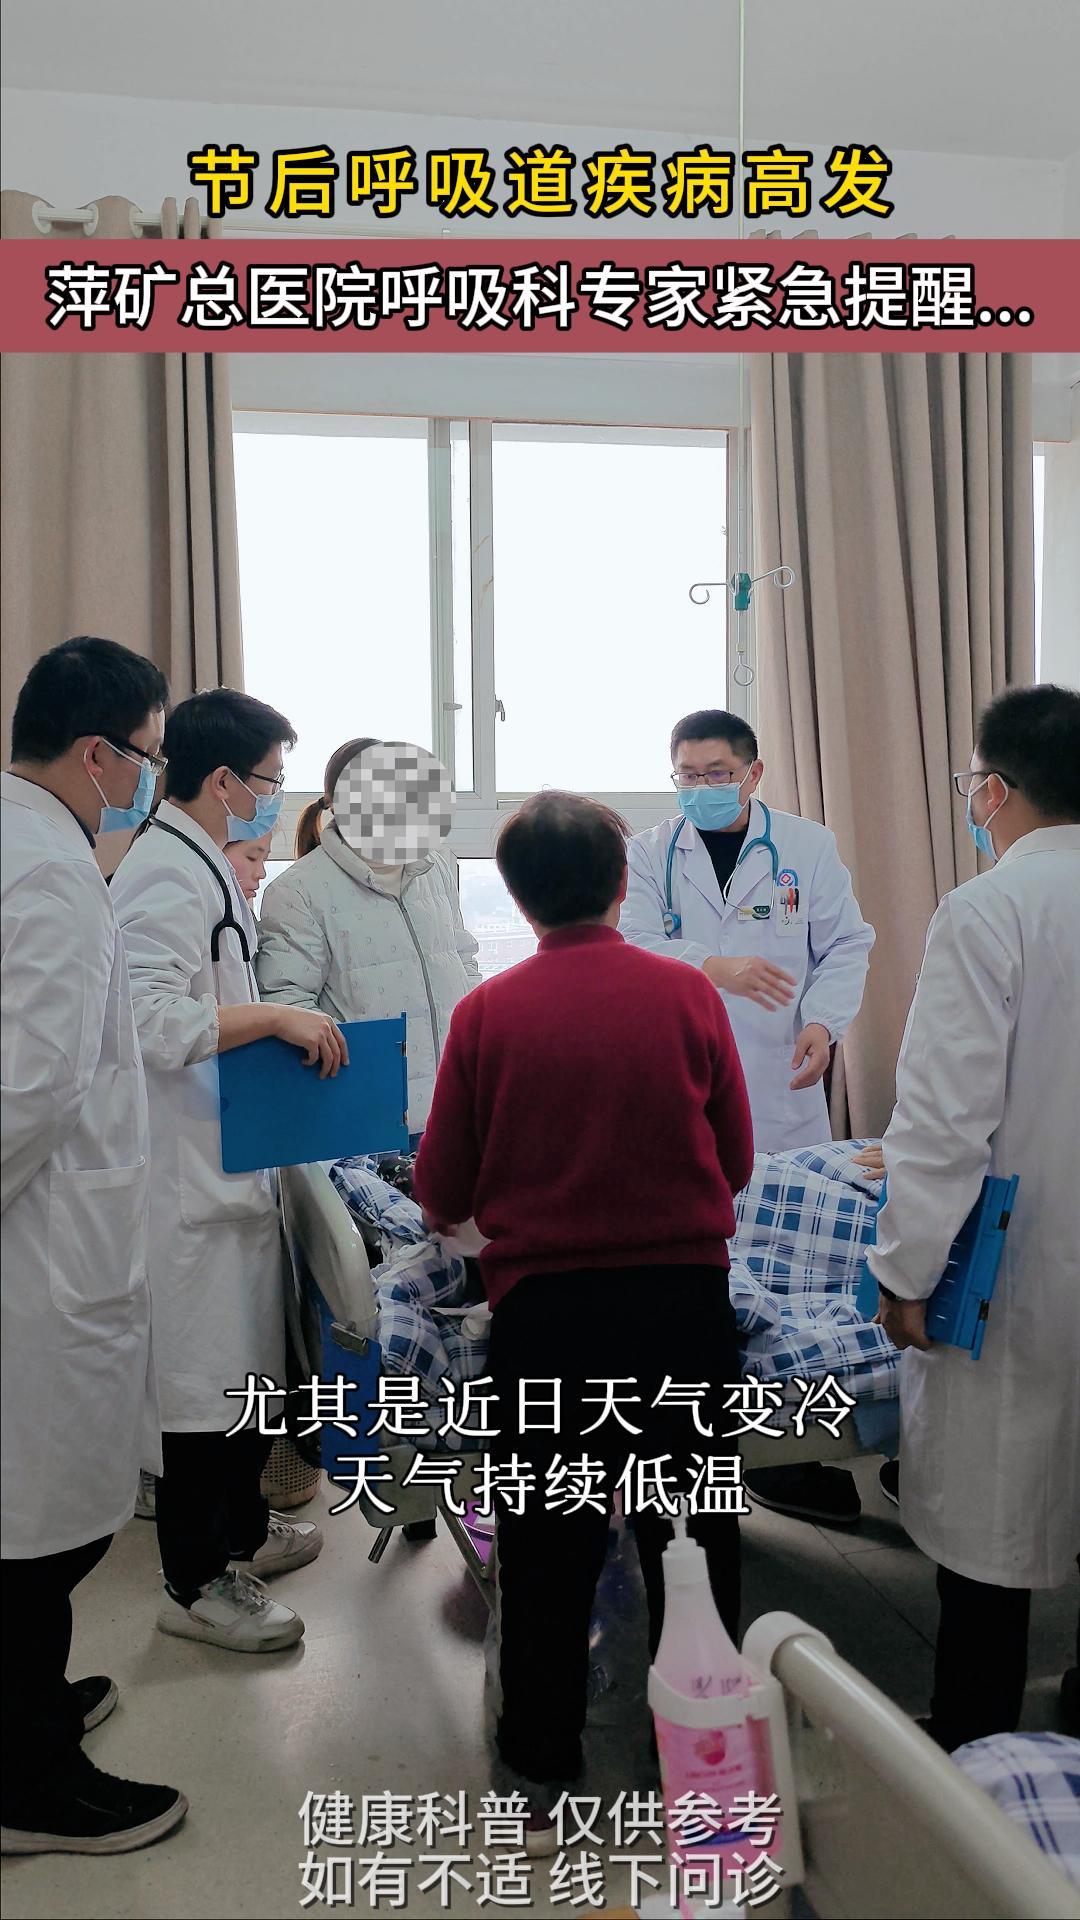 节后呼吸道疾病高发，萍矿总医院呼吸专家紧急提醒…